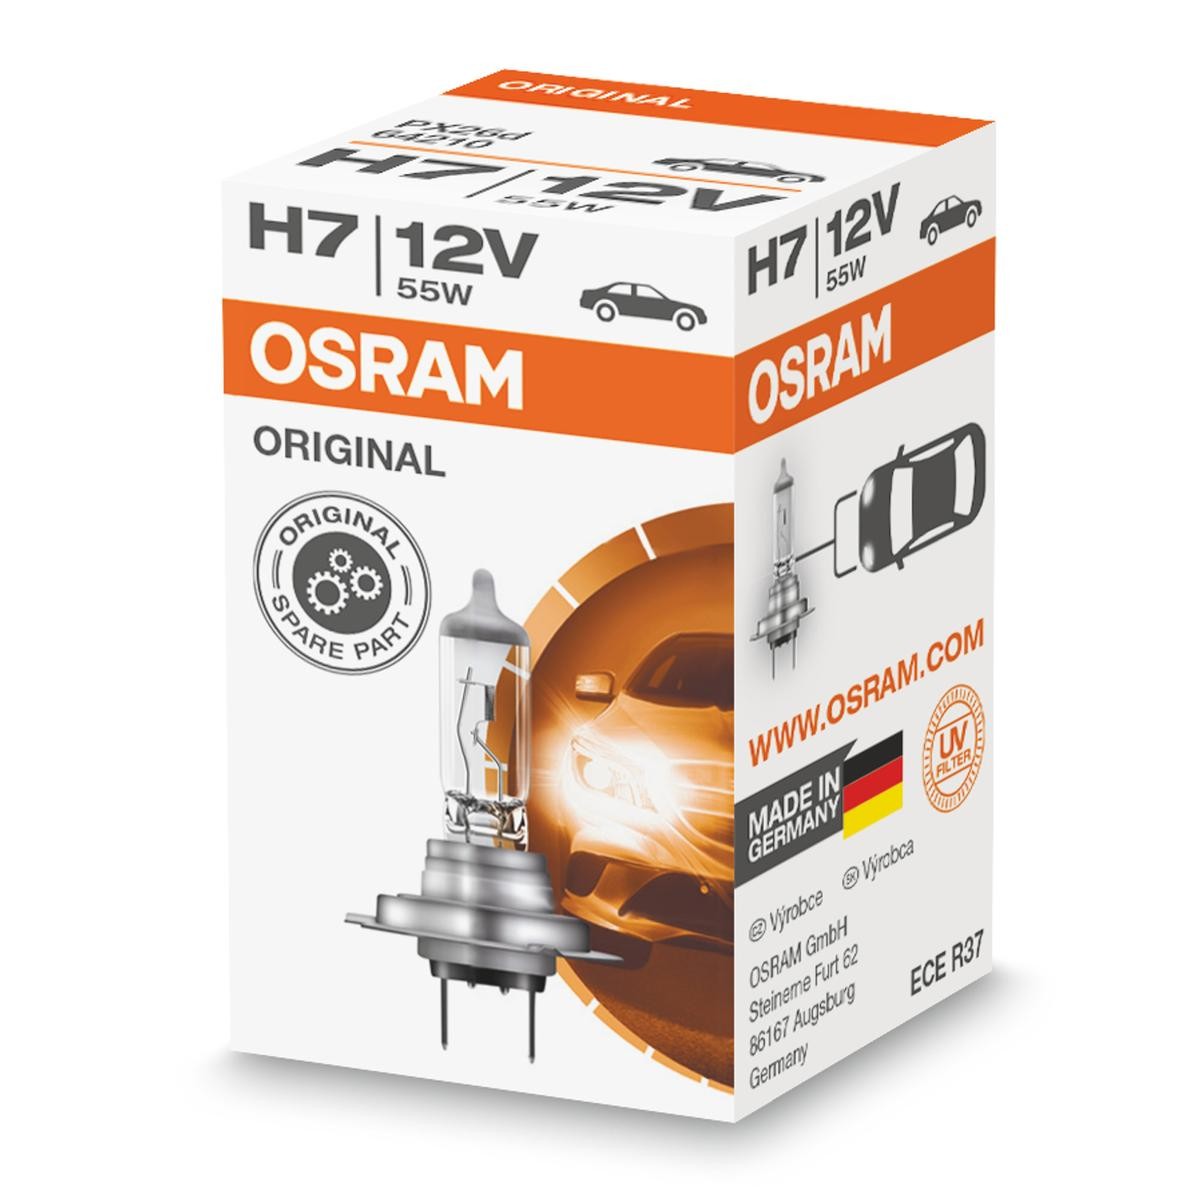 Piaggio ricambi originali OSRAM 64210L